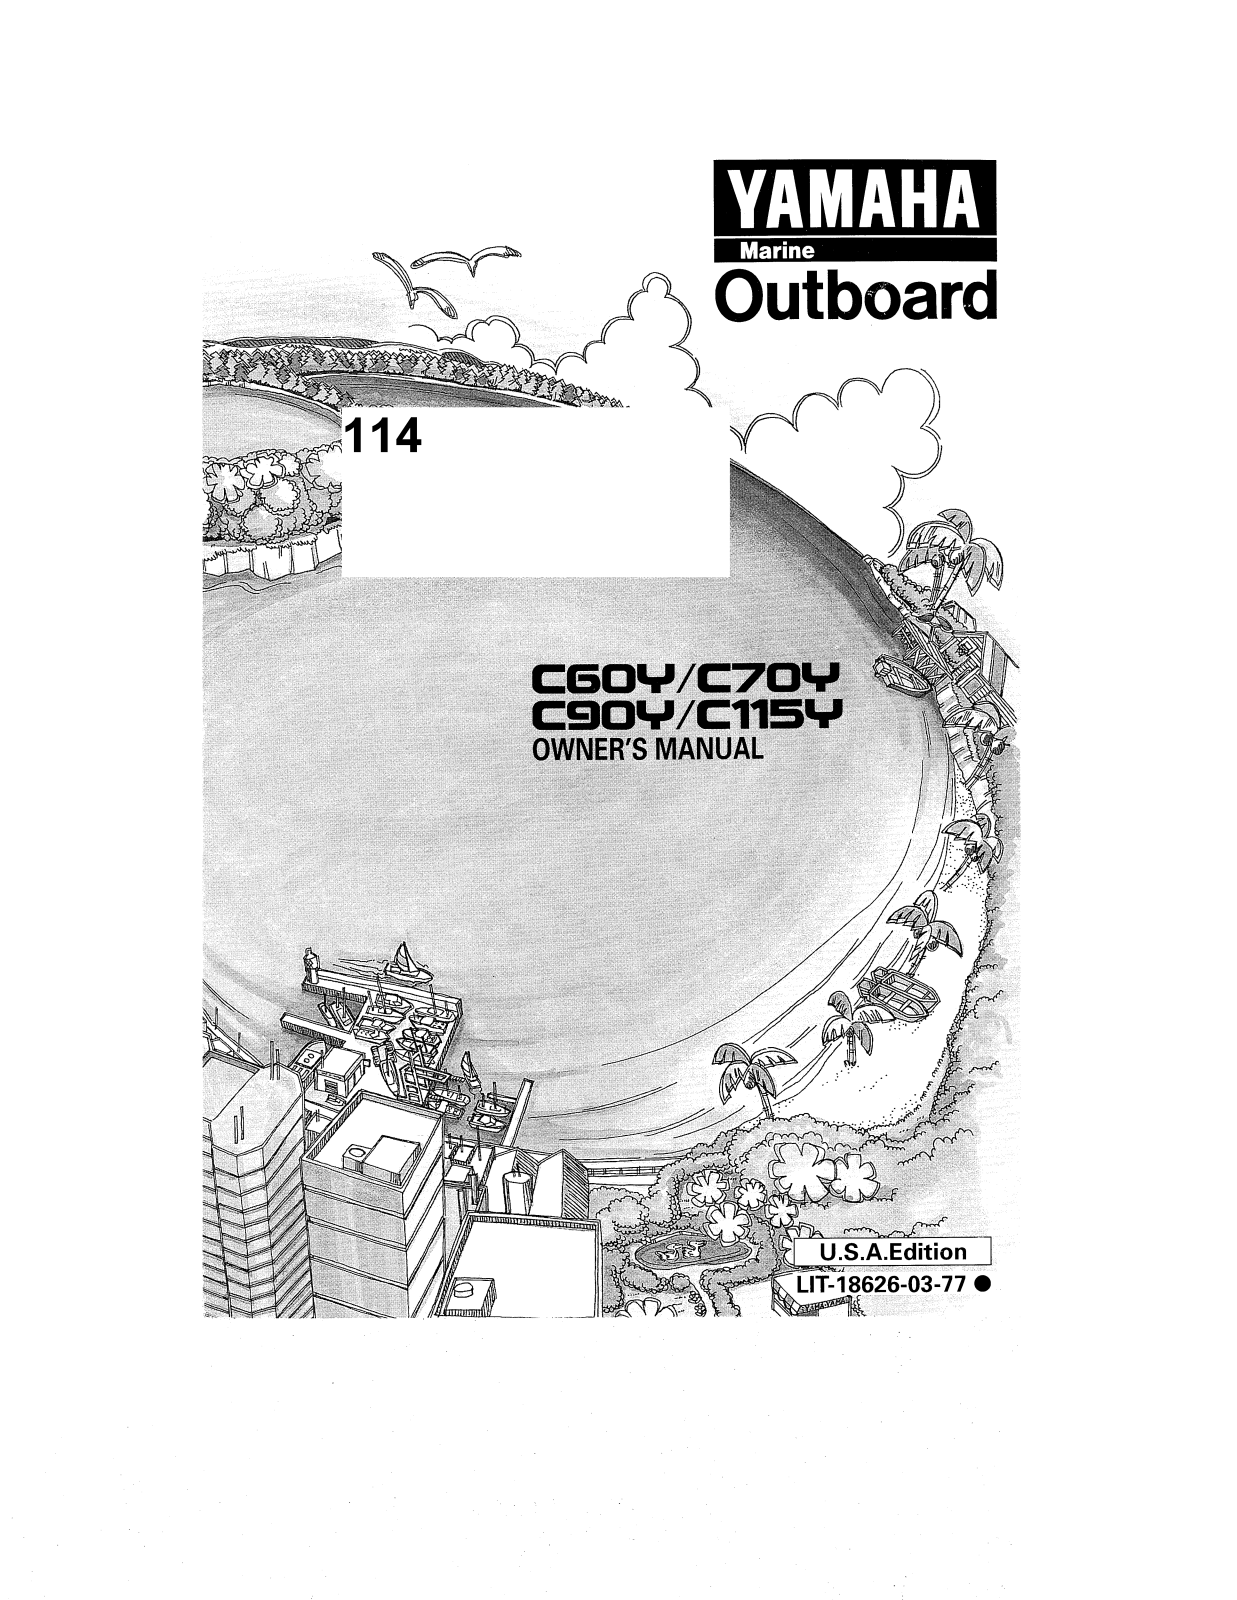 Yamaha C60Y, C70Y, C90Y, C115Y Manual